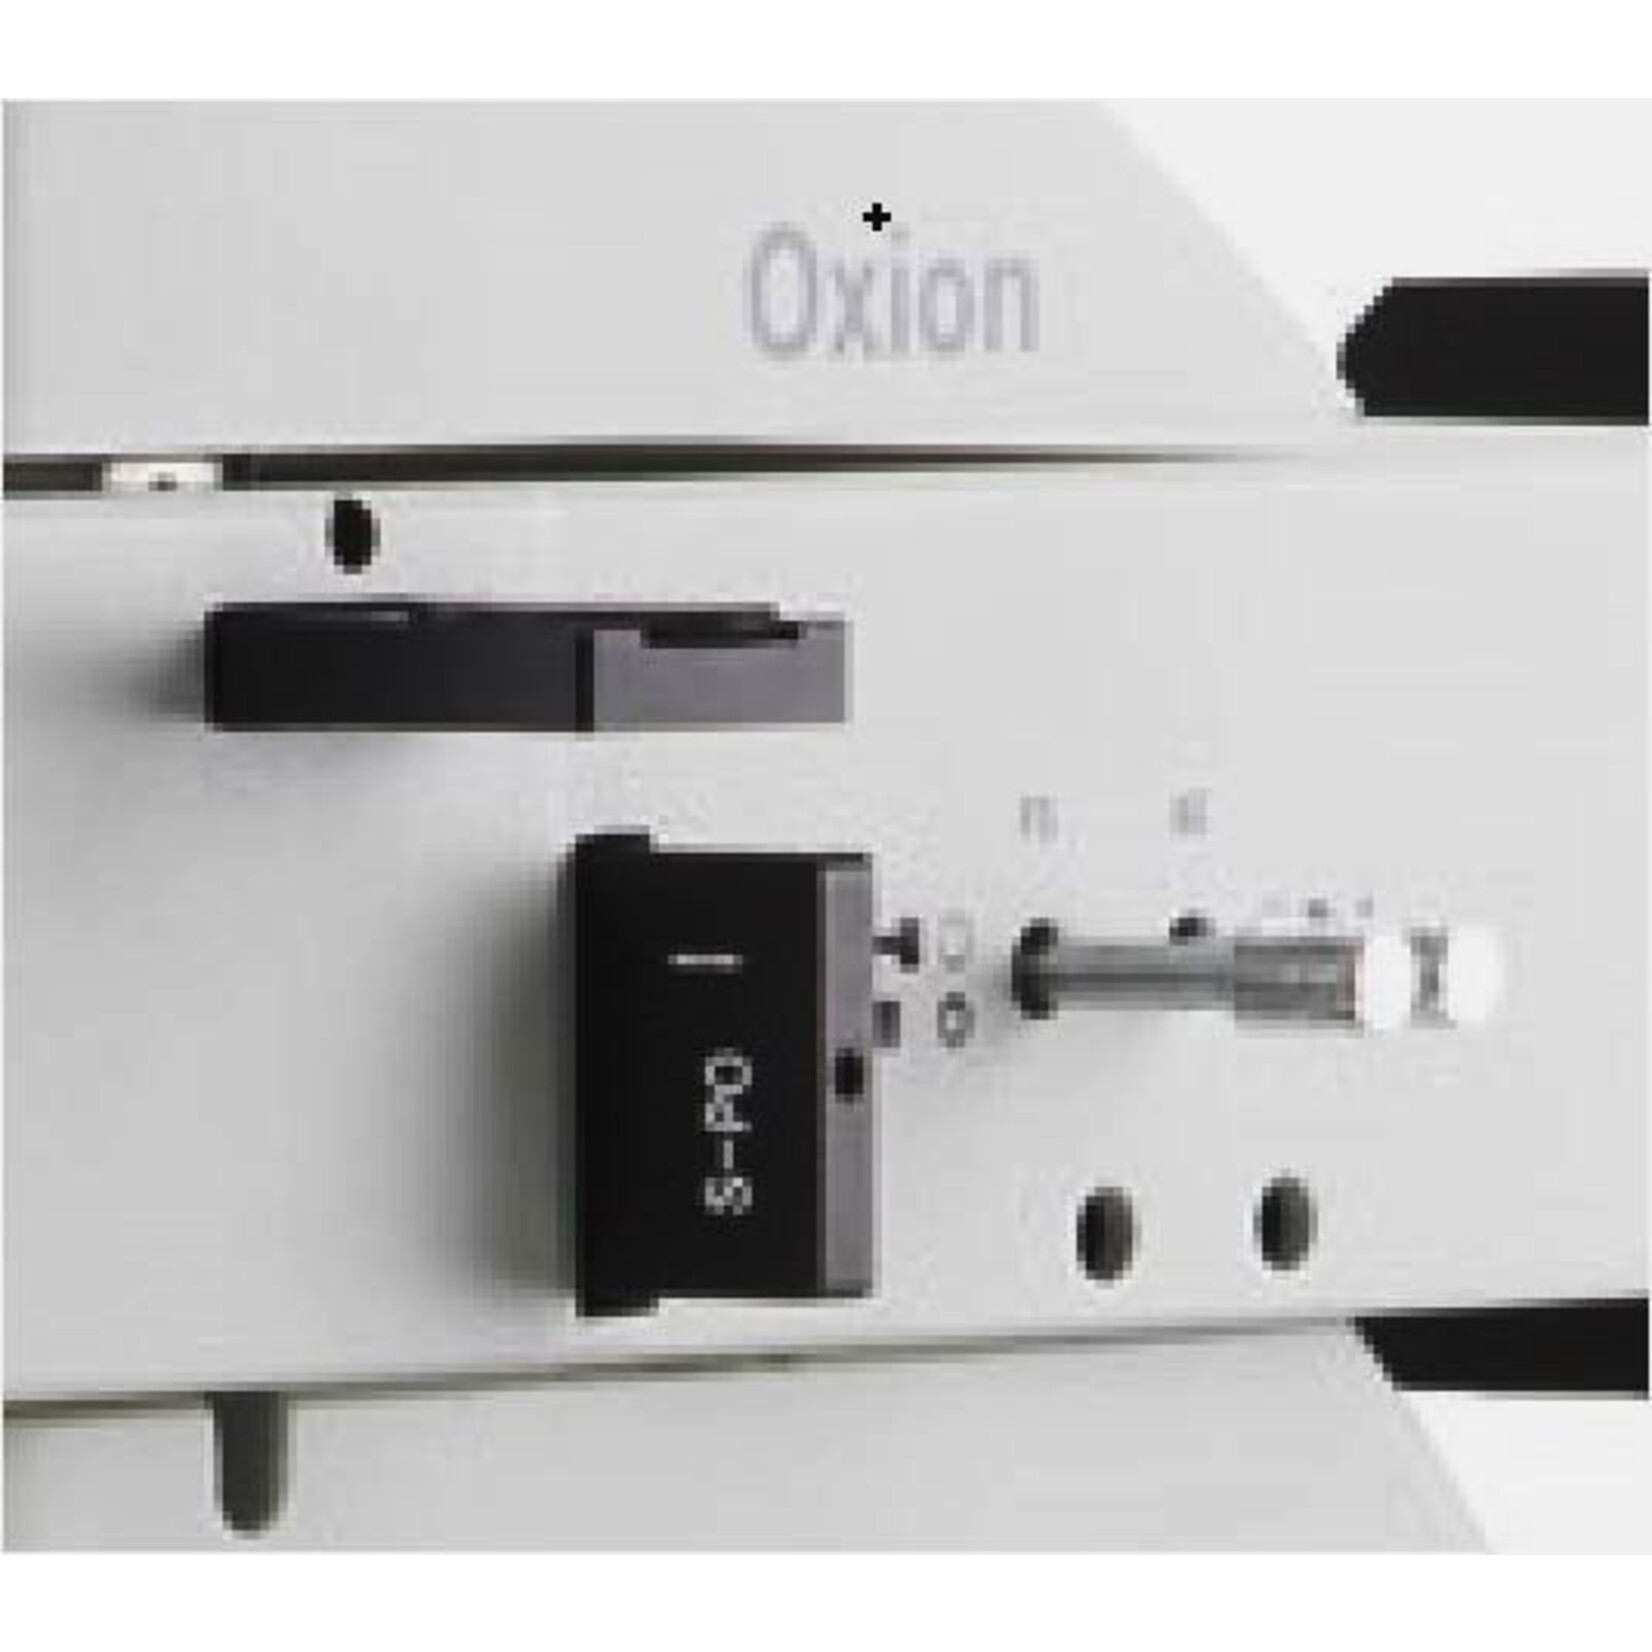 Microscopio industriale Oxion per micrografie